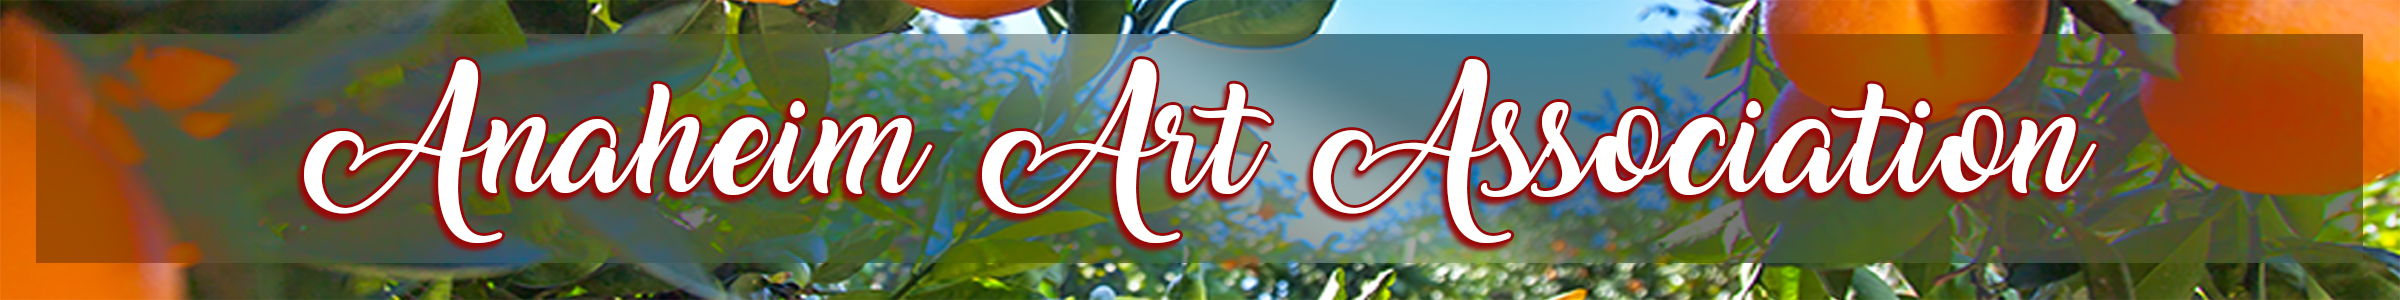 Anaheim Art Association - 